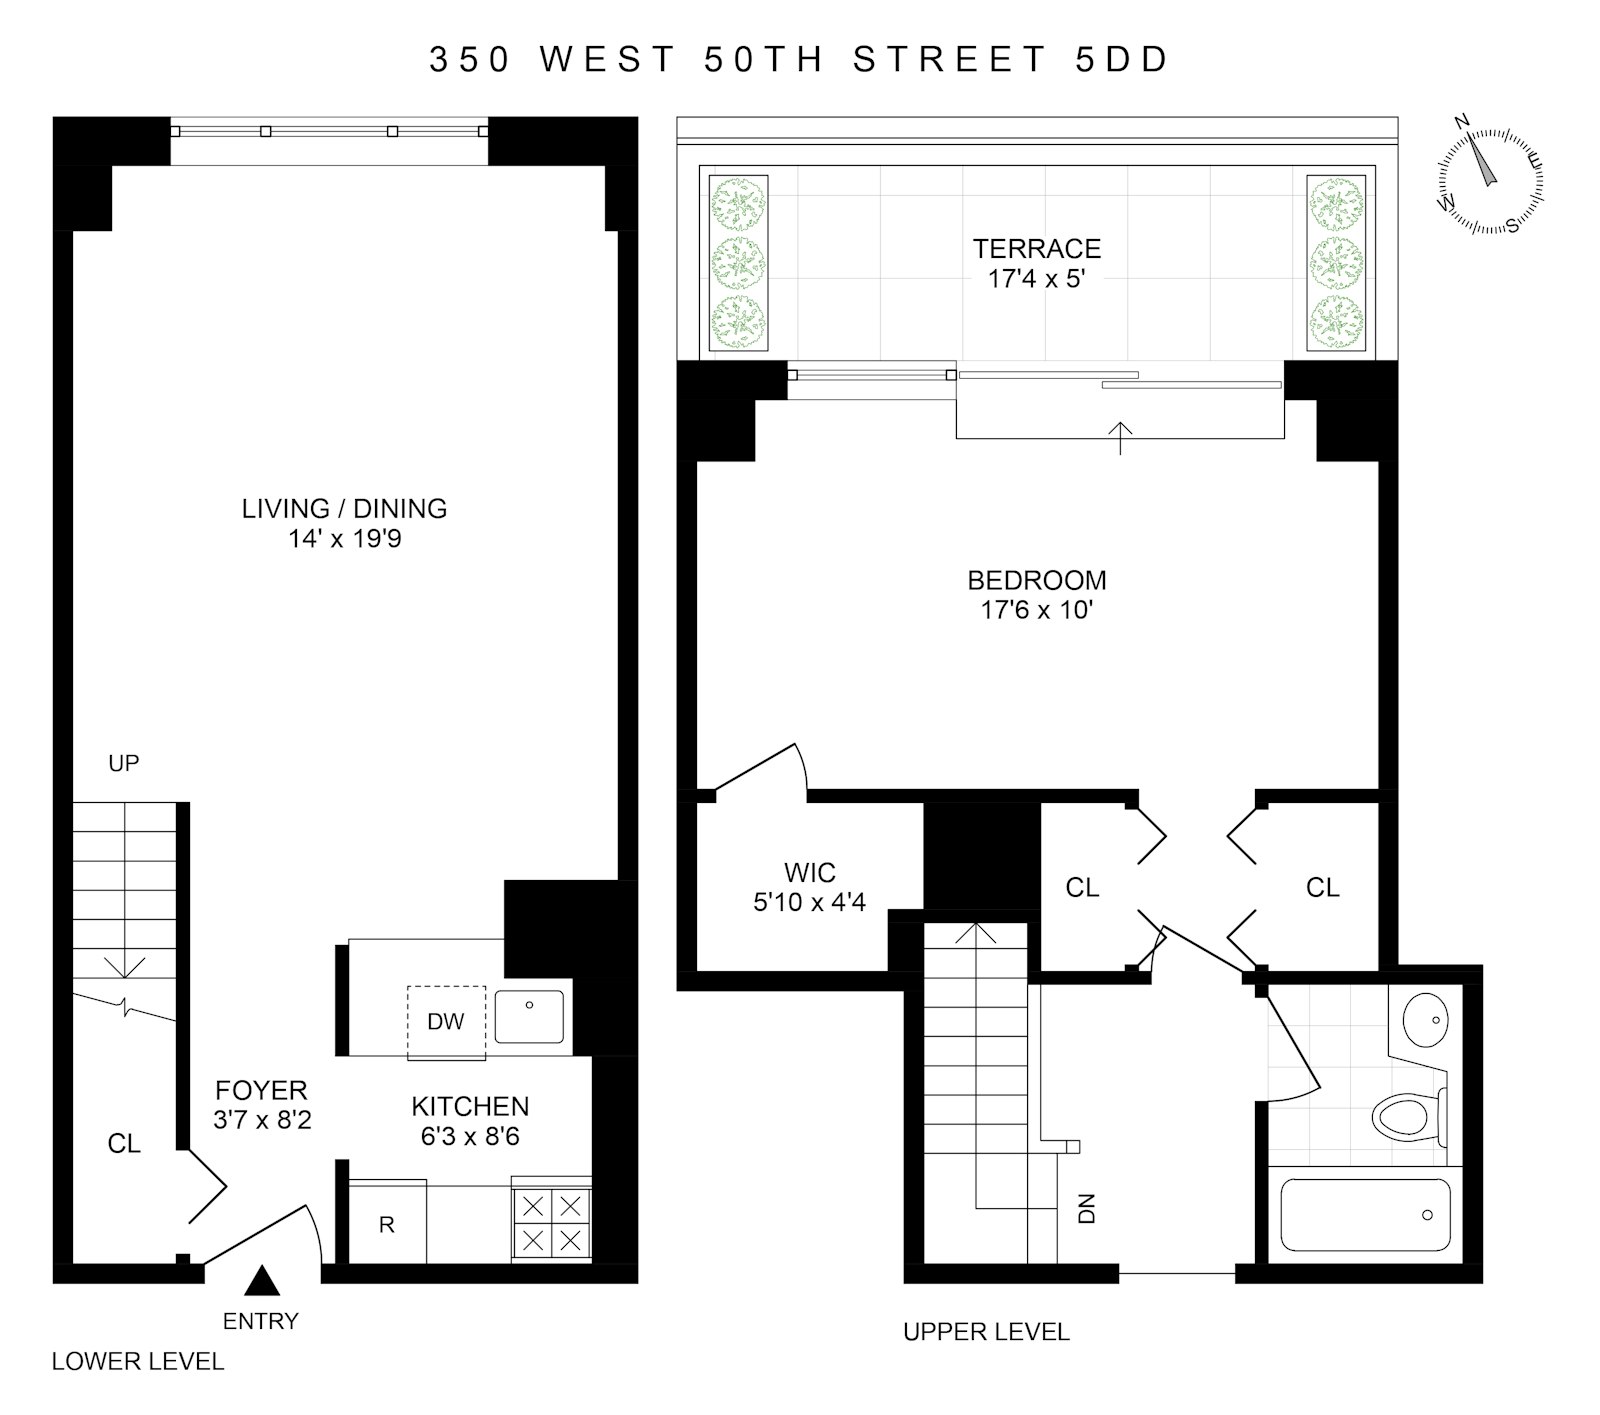 Floorplan for 350 West 50th Street, 5DD